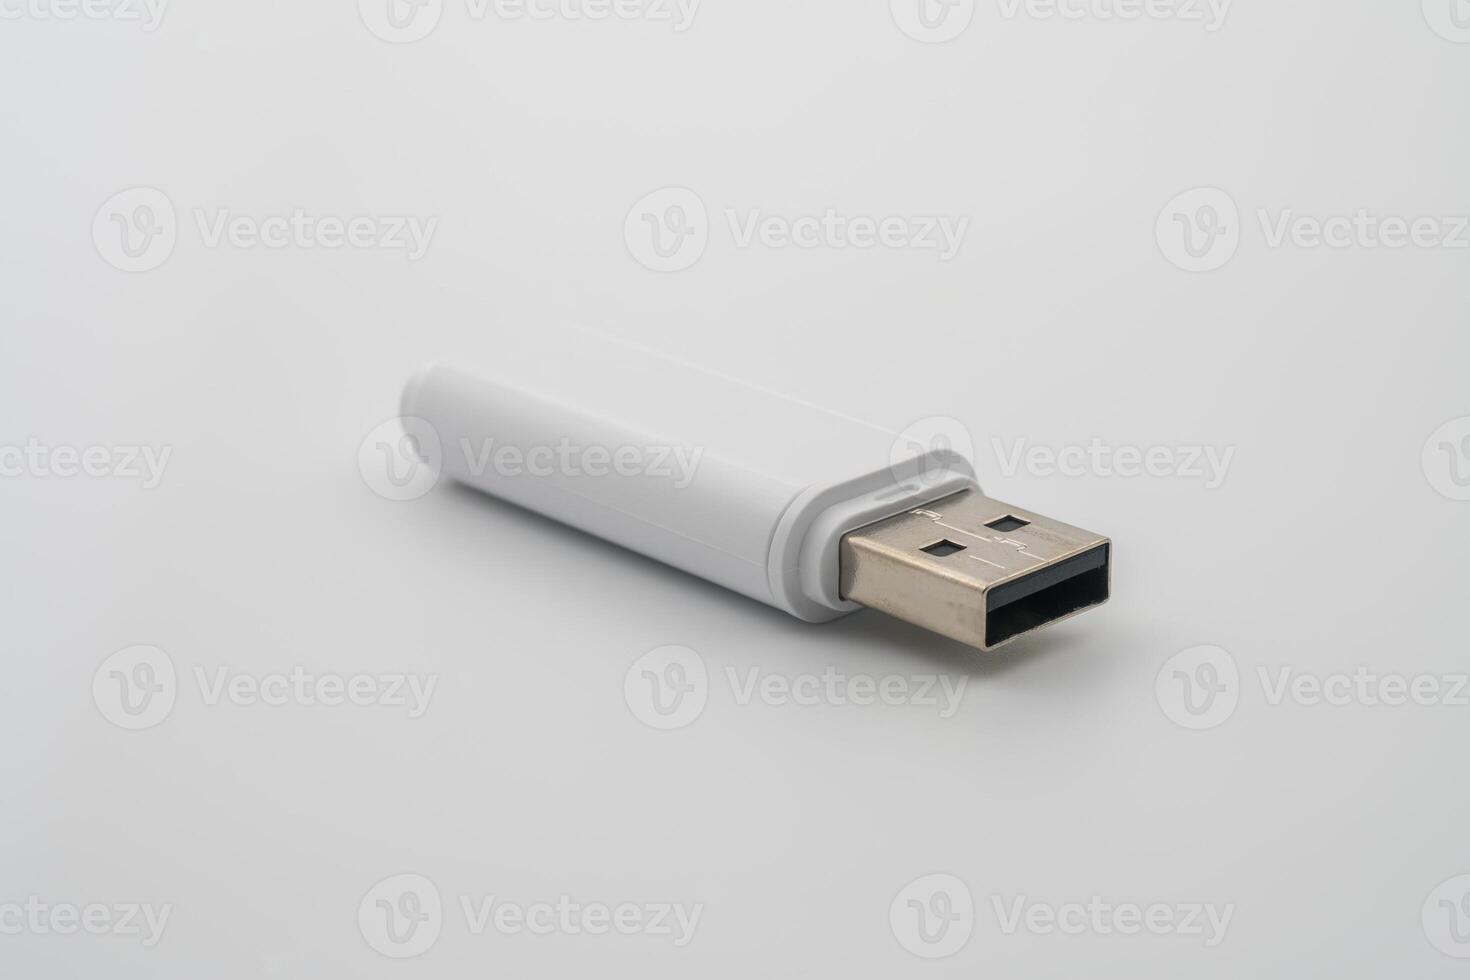 USB éclat conduire, USB type A connecteur, conçu pour portabilité, Les données échange, compatible avec plusieurs en fonctionnement systèmes, brancher et utiliser appareil, communément utilisé pour personnel Les données transport et sauvegarde. photo